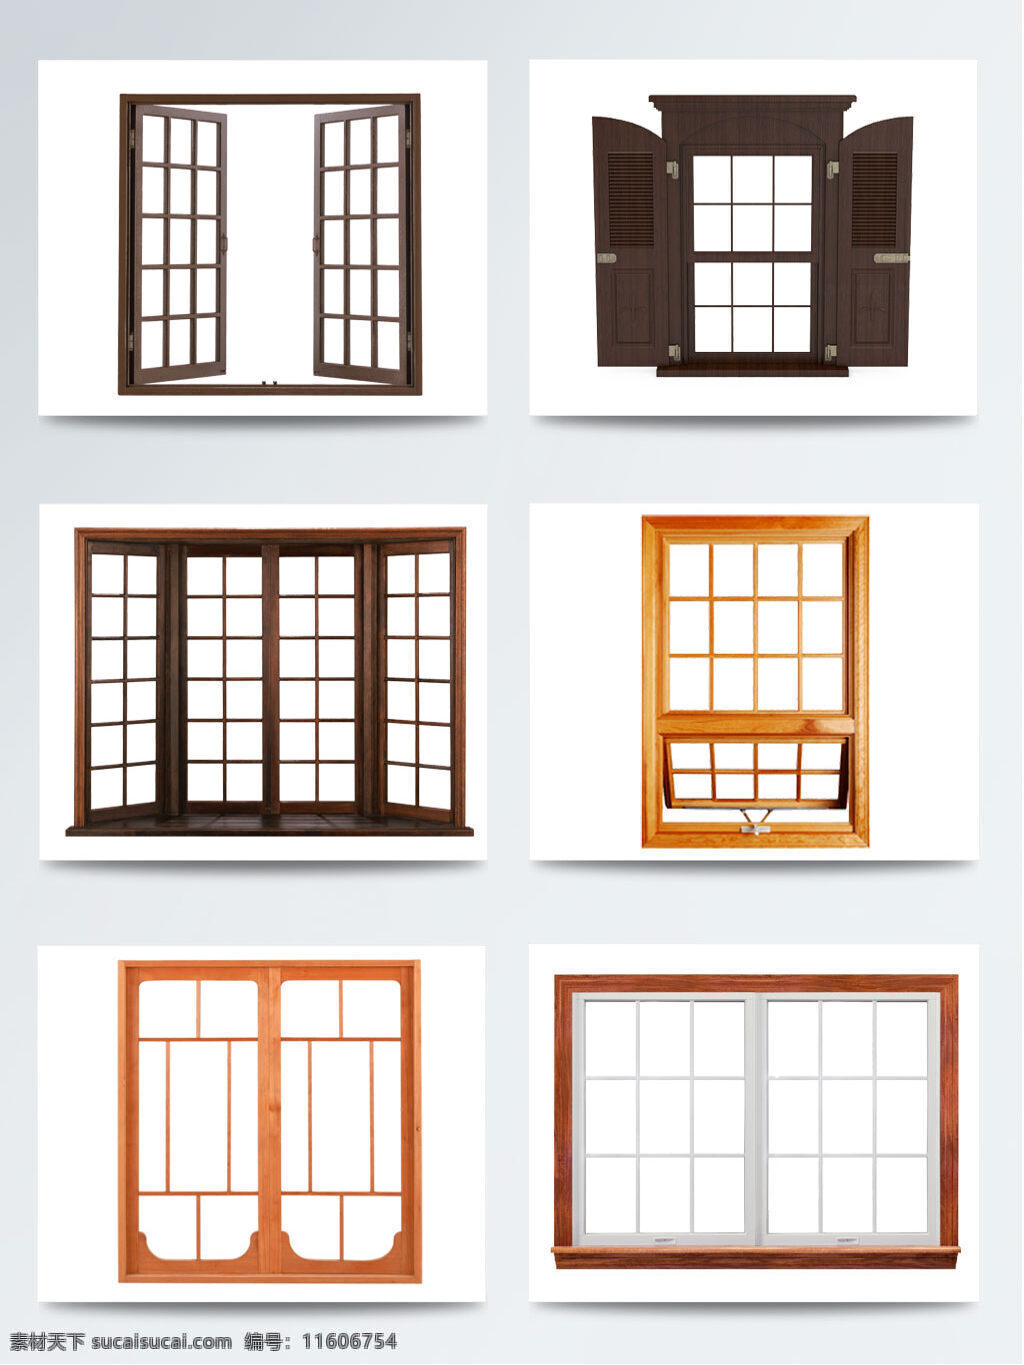 高清 免 扣 木质 窗户 窗户边框 窗户素材 古典窗户 精美欧式窗户 木质窗户 木质素材 小清新素材 中式 装饰窗户